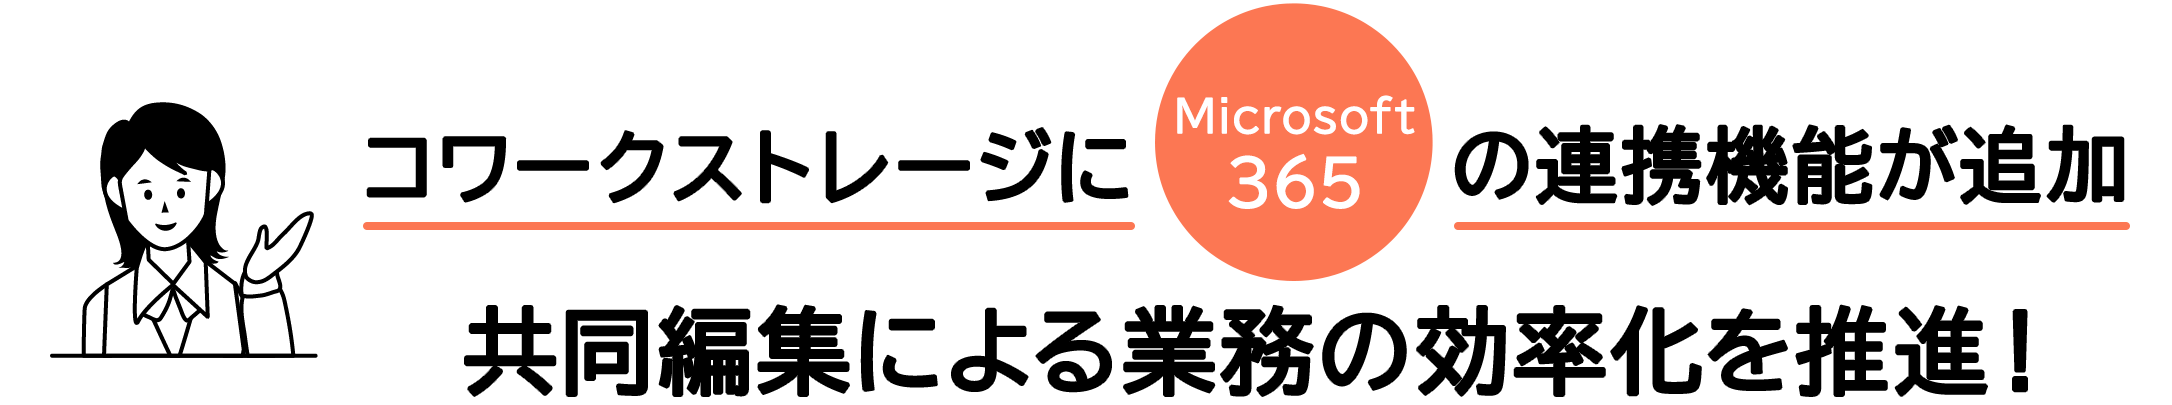 「コワークストレージ」にMicrosoft 365連携機能 共同編集による業務の効率化をめざす!!